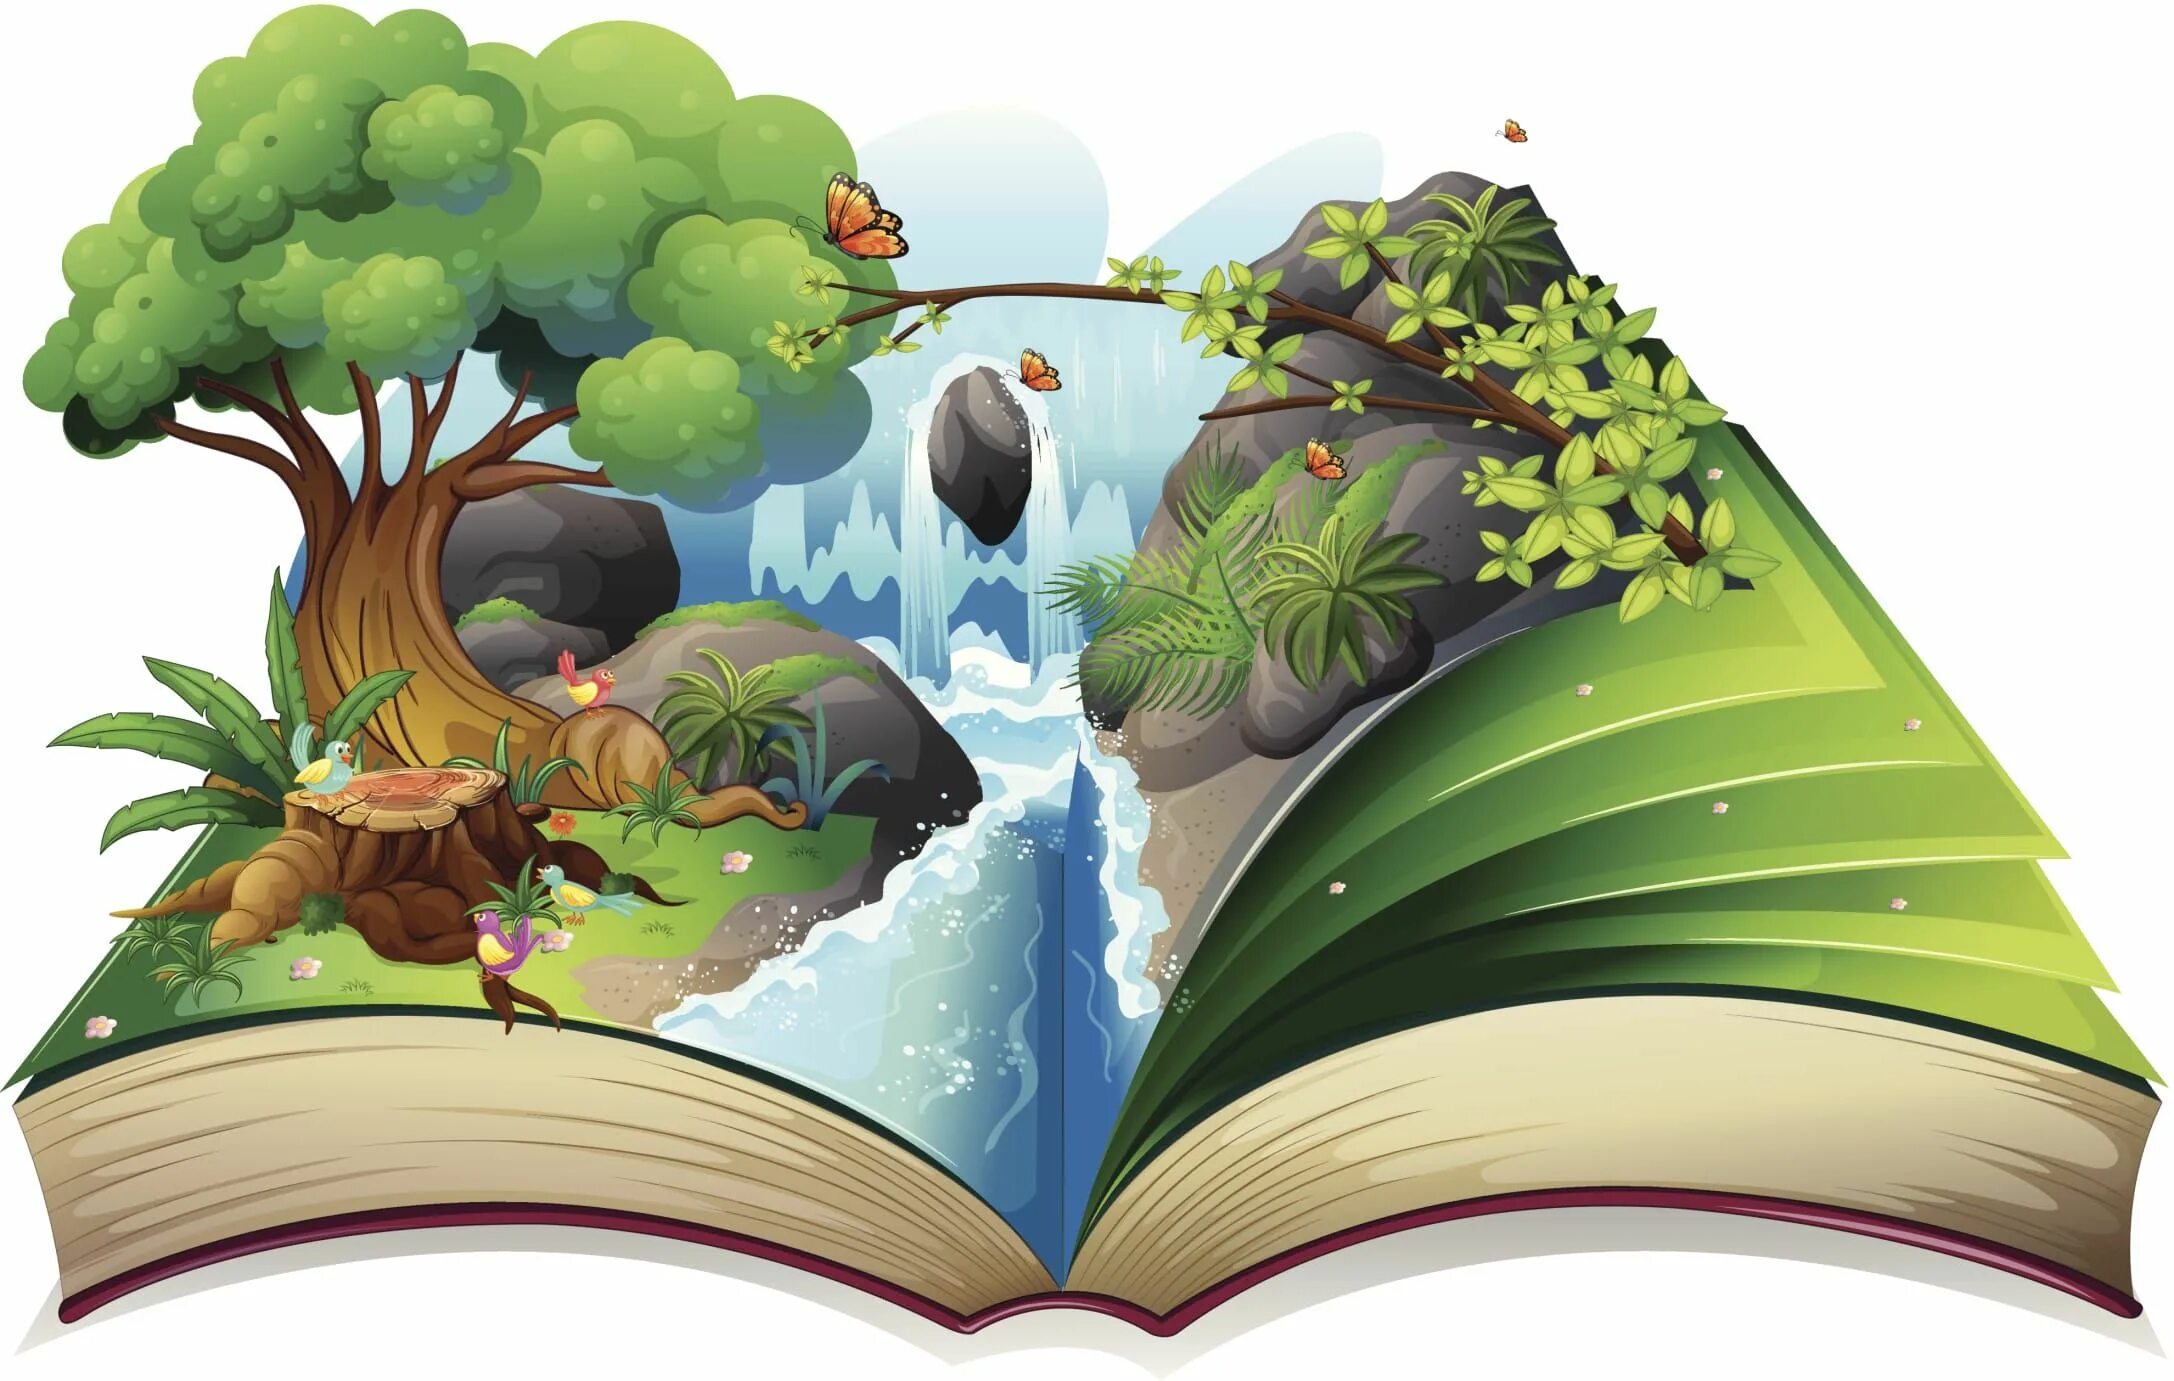 Путешествие в мир сказок. Иллюстрации к книгам. Сказочные книги для детей. Раскрытая детская книга.